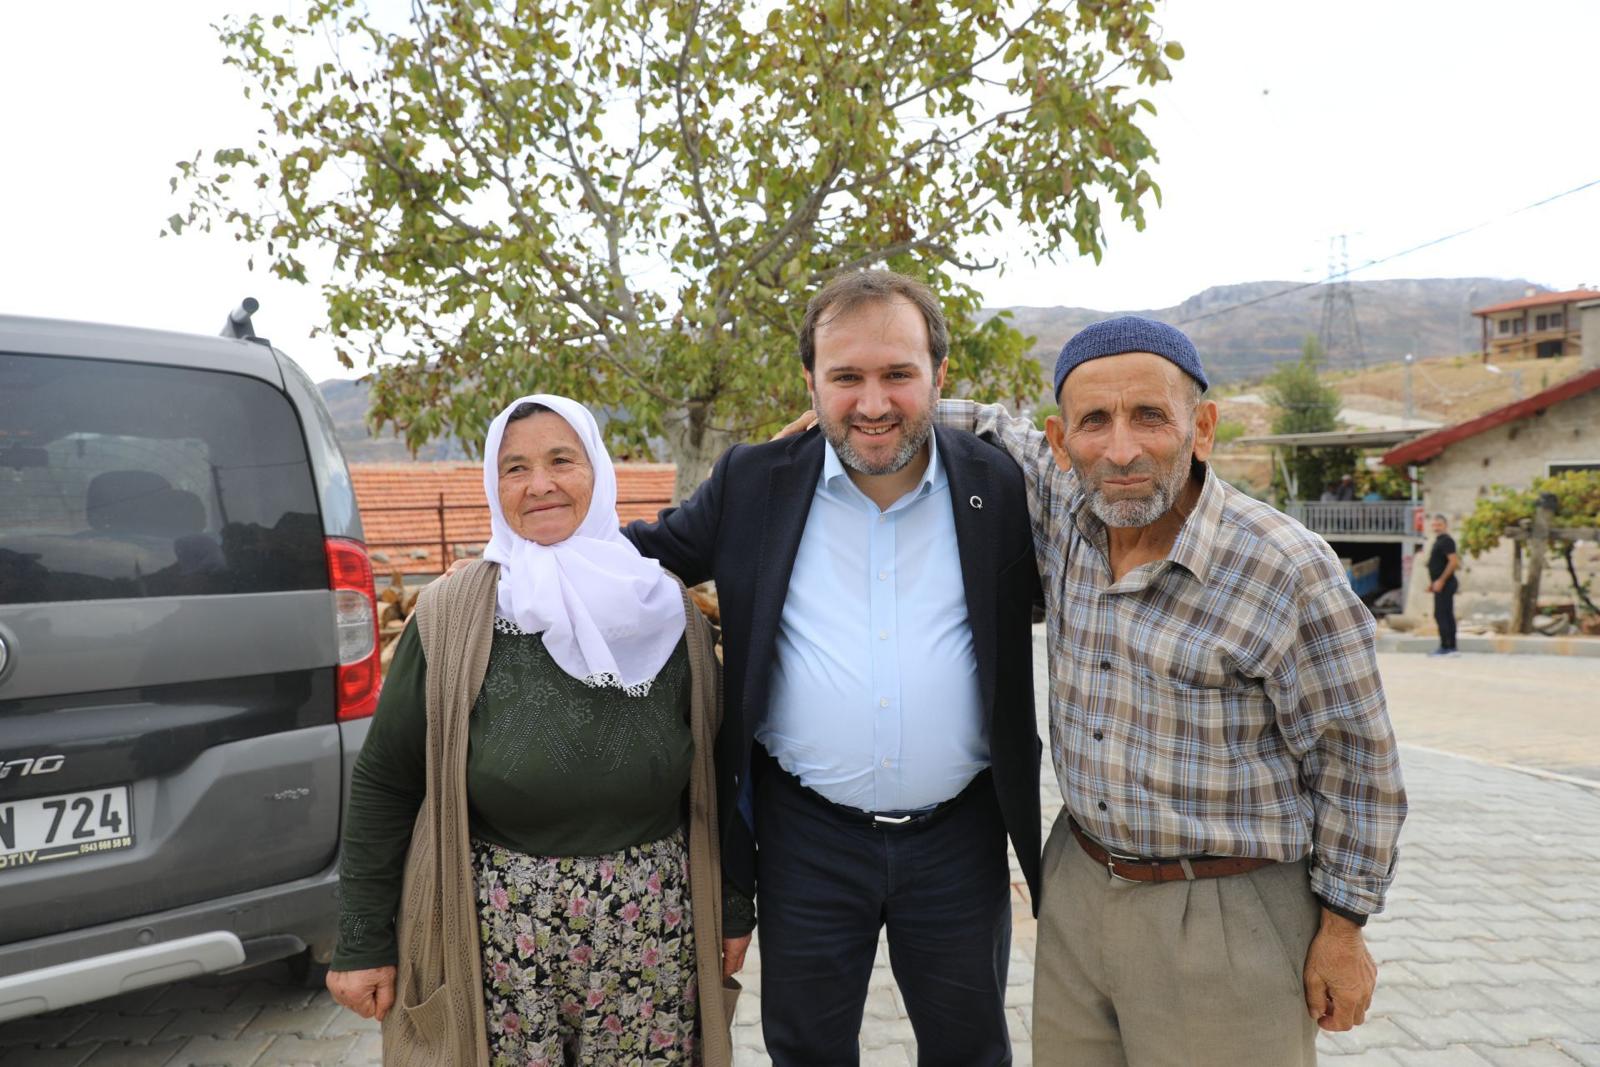 Akseki Belediye Başkanı İbrahim Özkan  7’den 70’e ilçede yaşayanların gönüllerine girmeye devam ediyor.